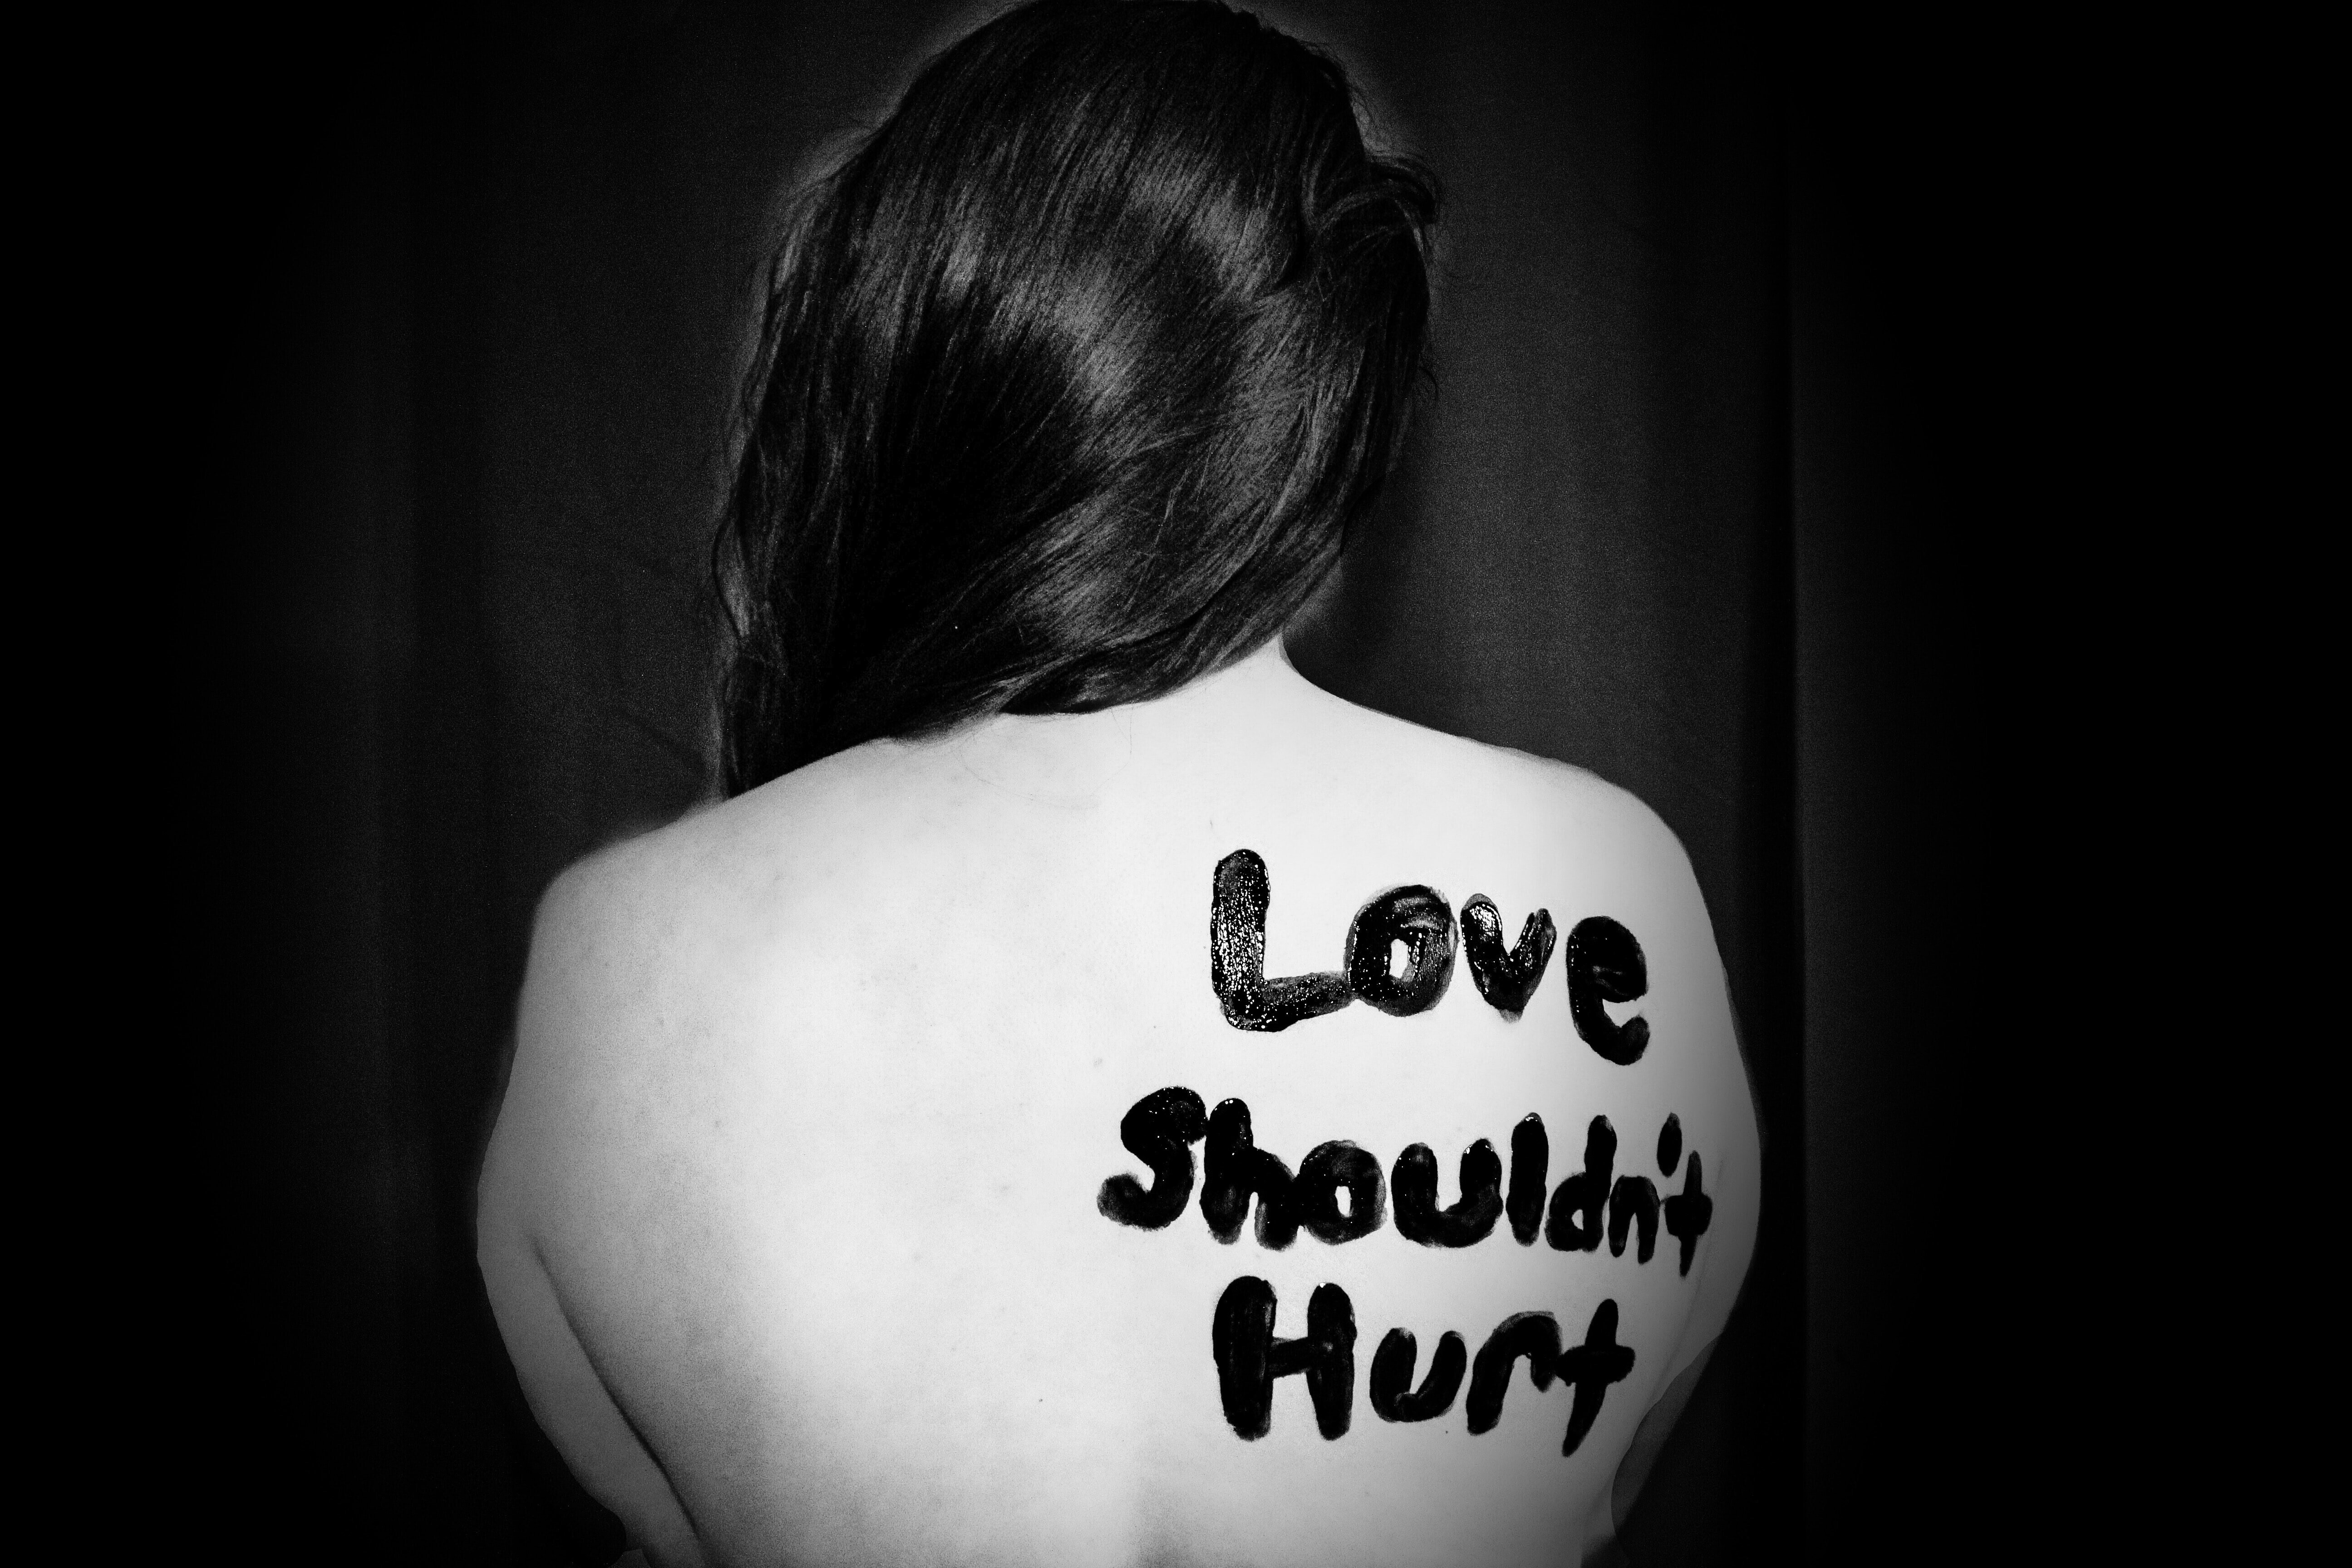 love shouldn't hurt